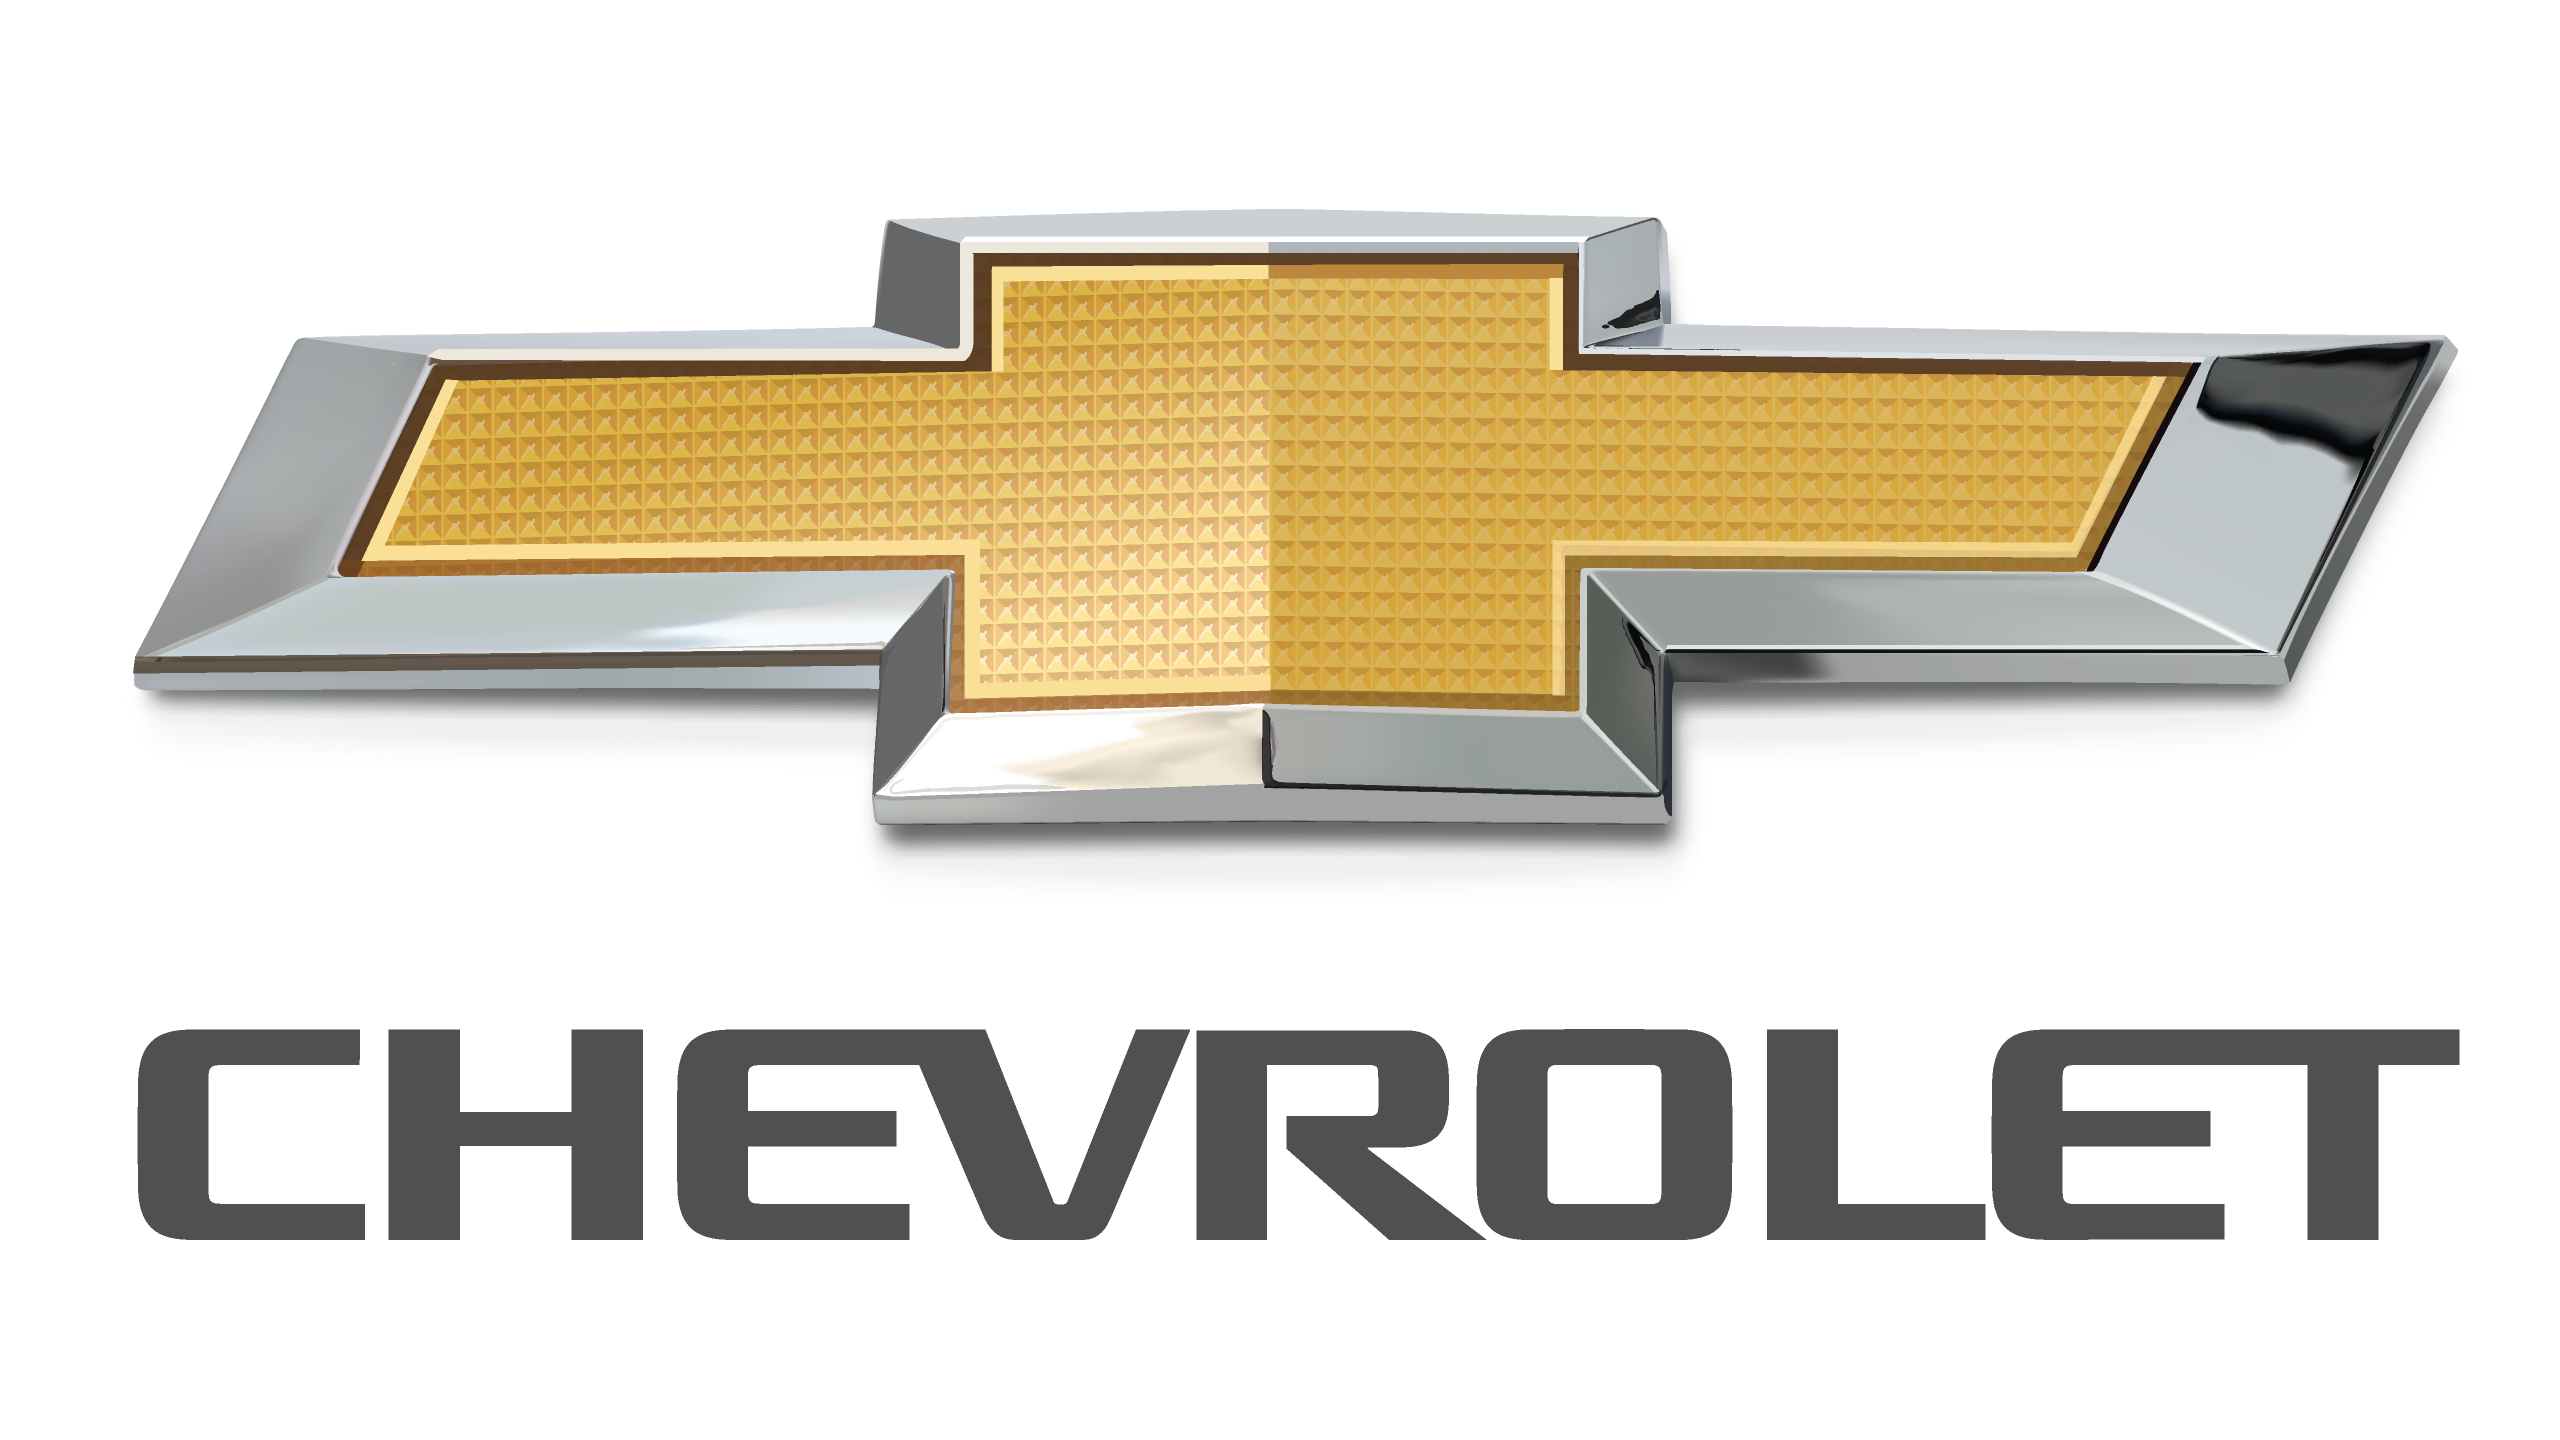 Изображение лого Chevrolet